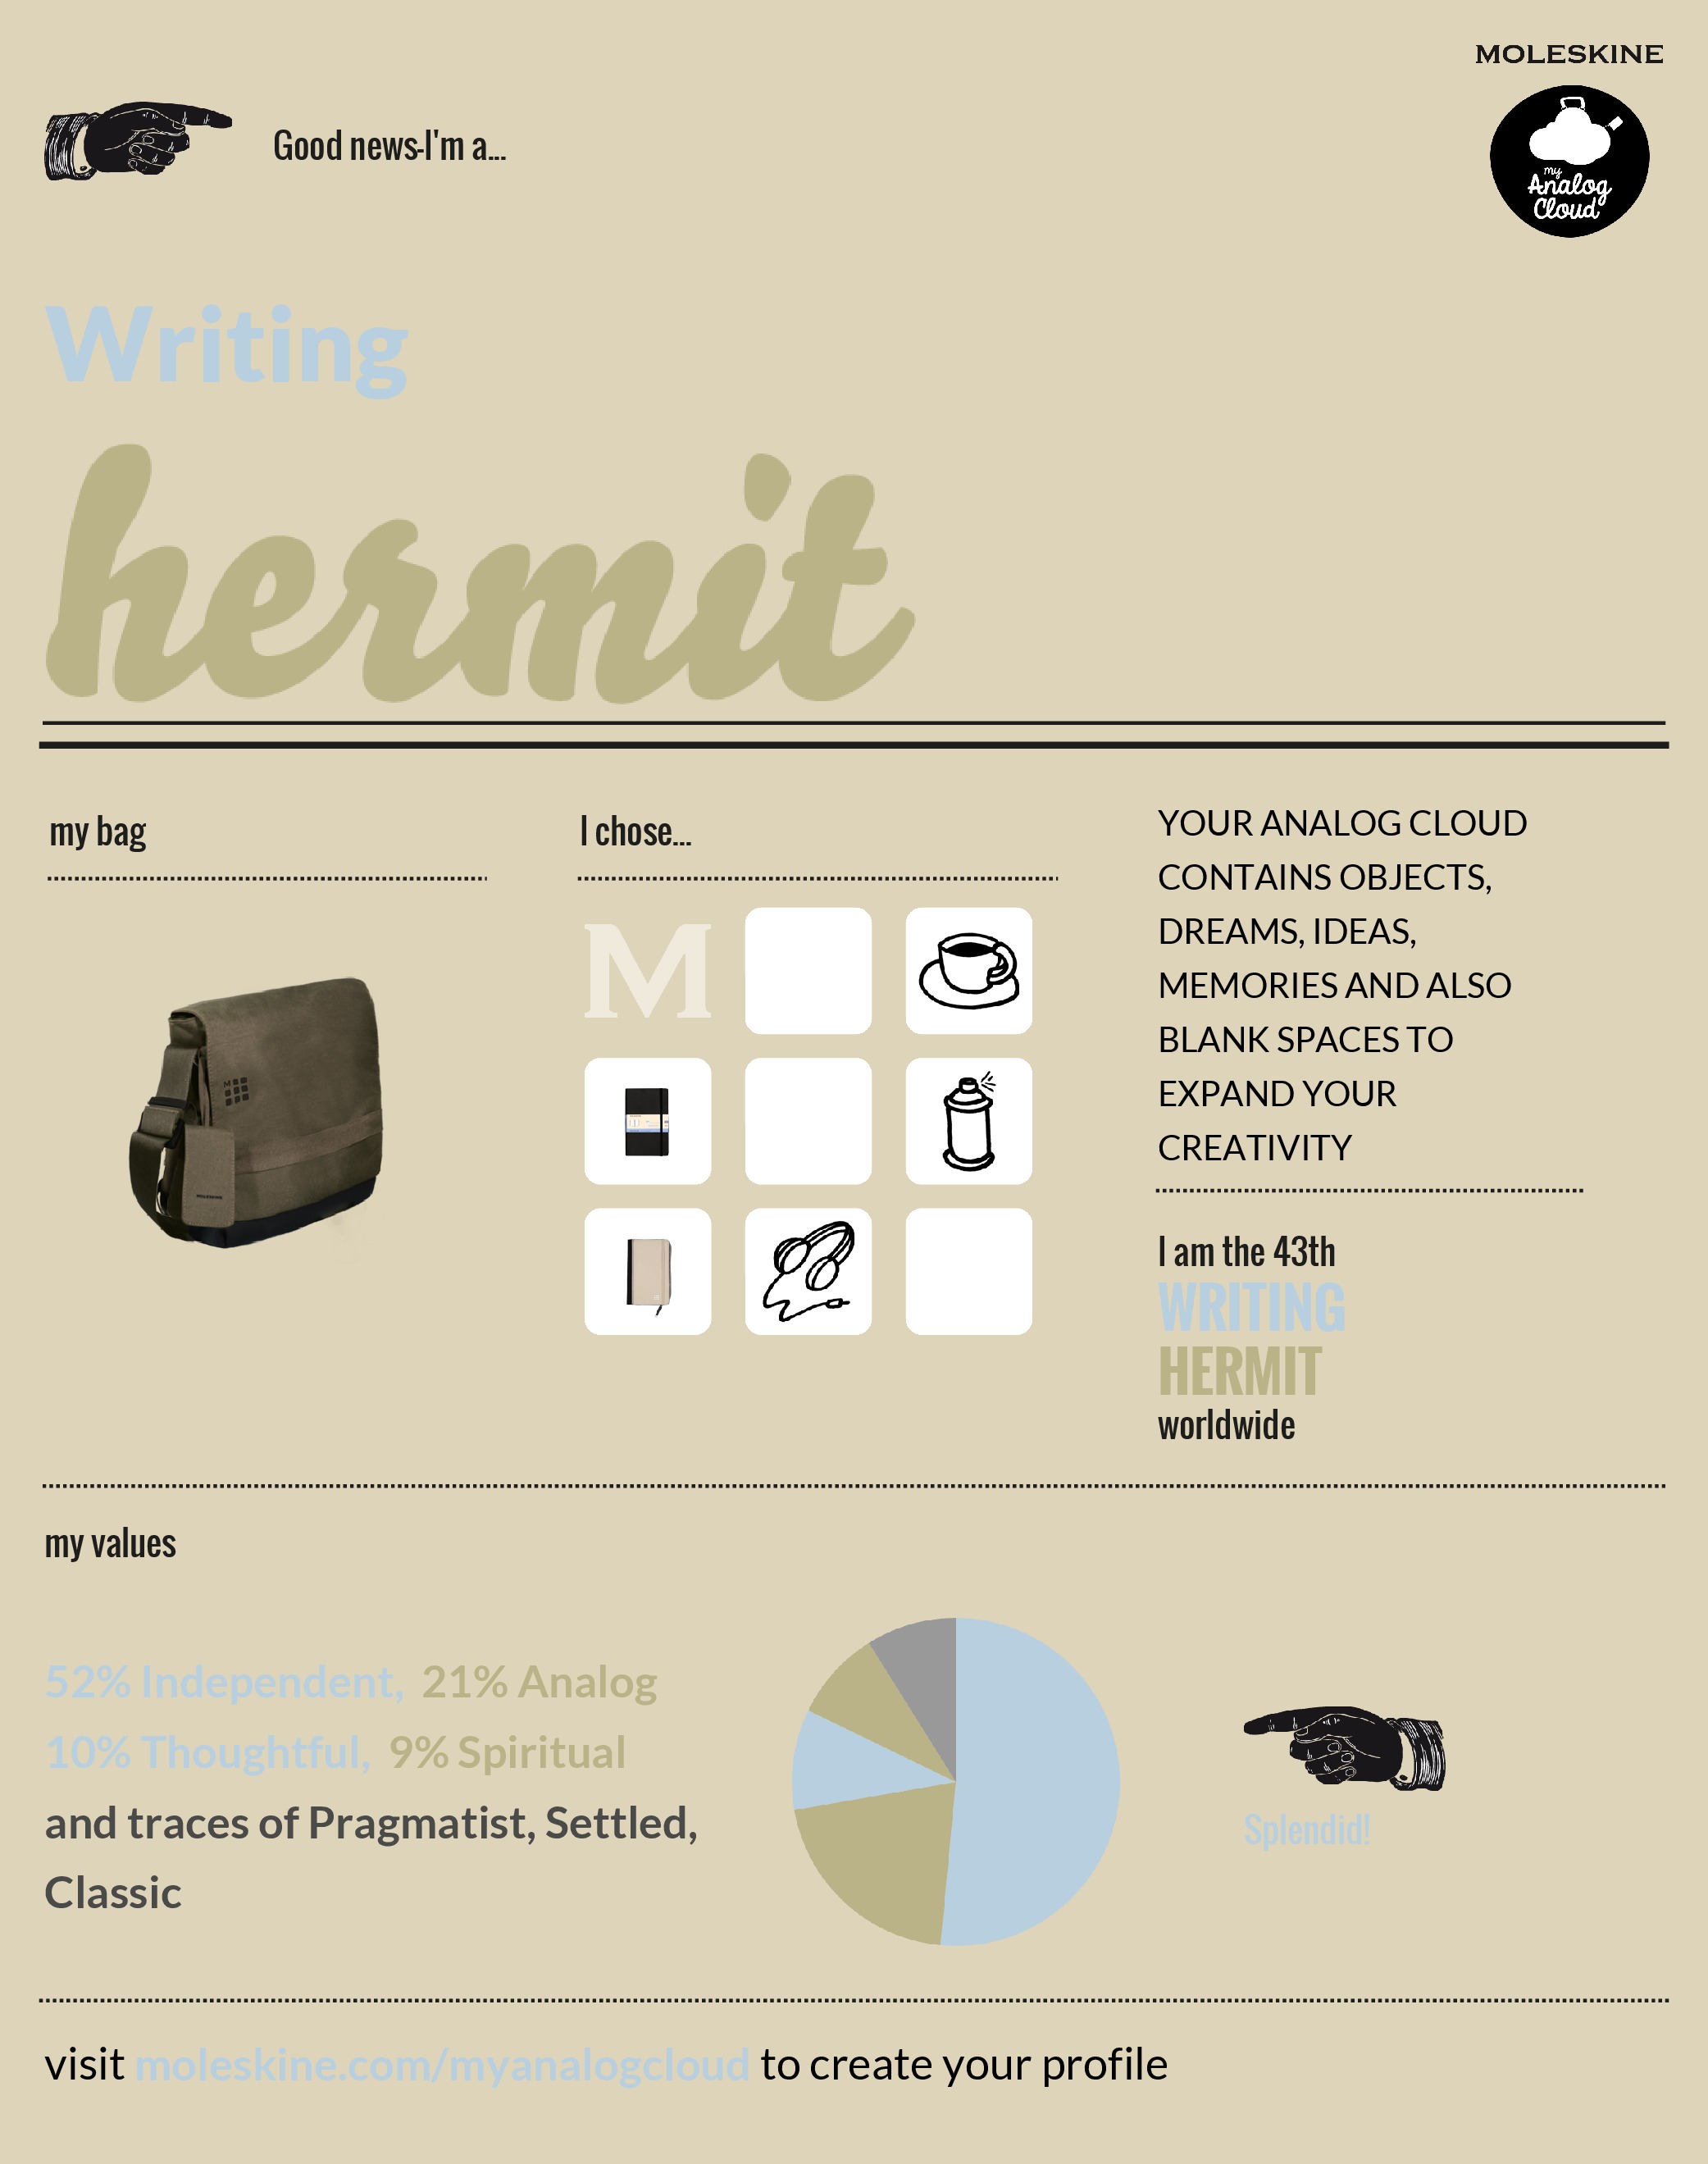 Writing hermit